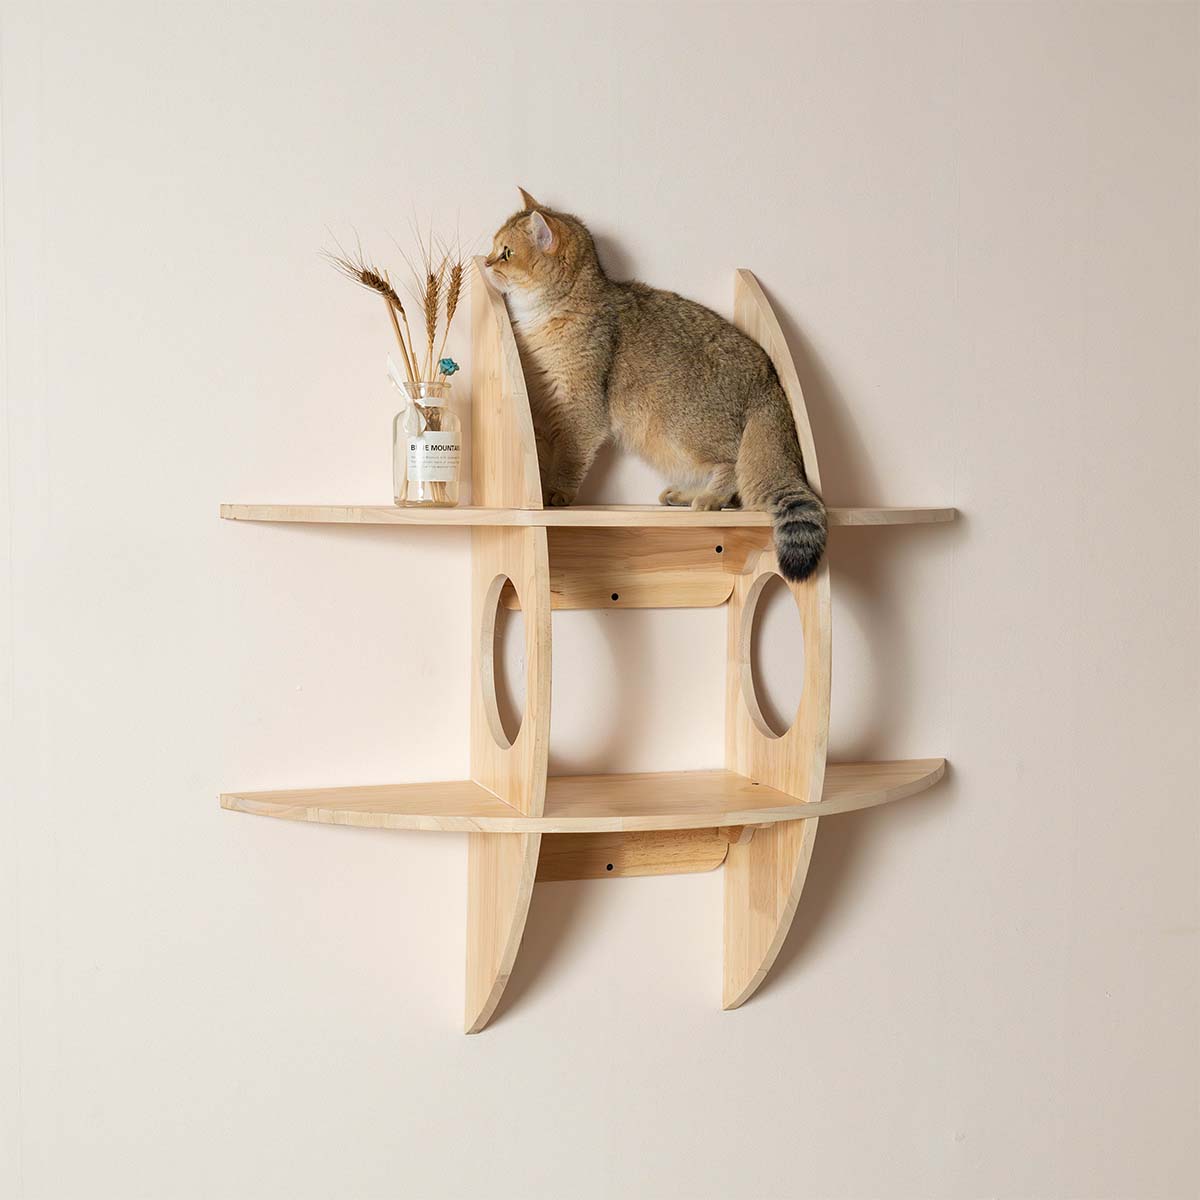 PETOMGキャットウォーク、DIY猫の棚、キャットウォール取り付けタイプ